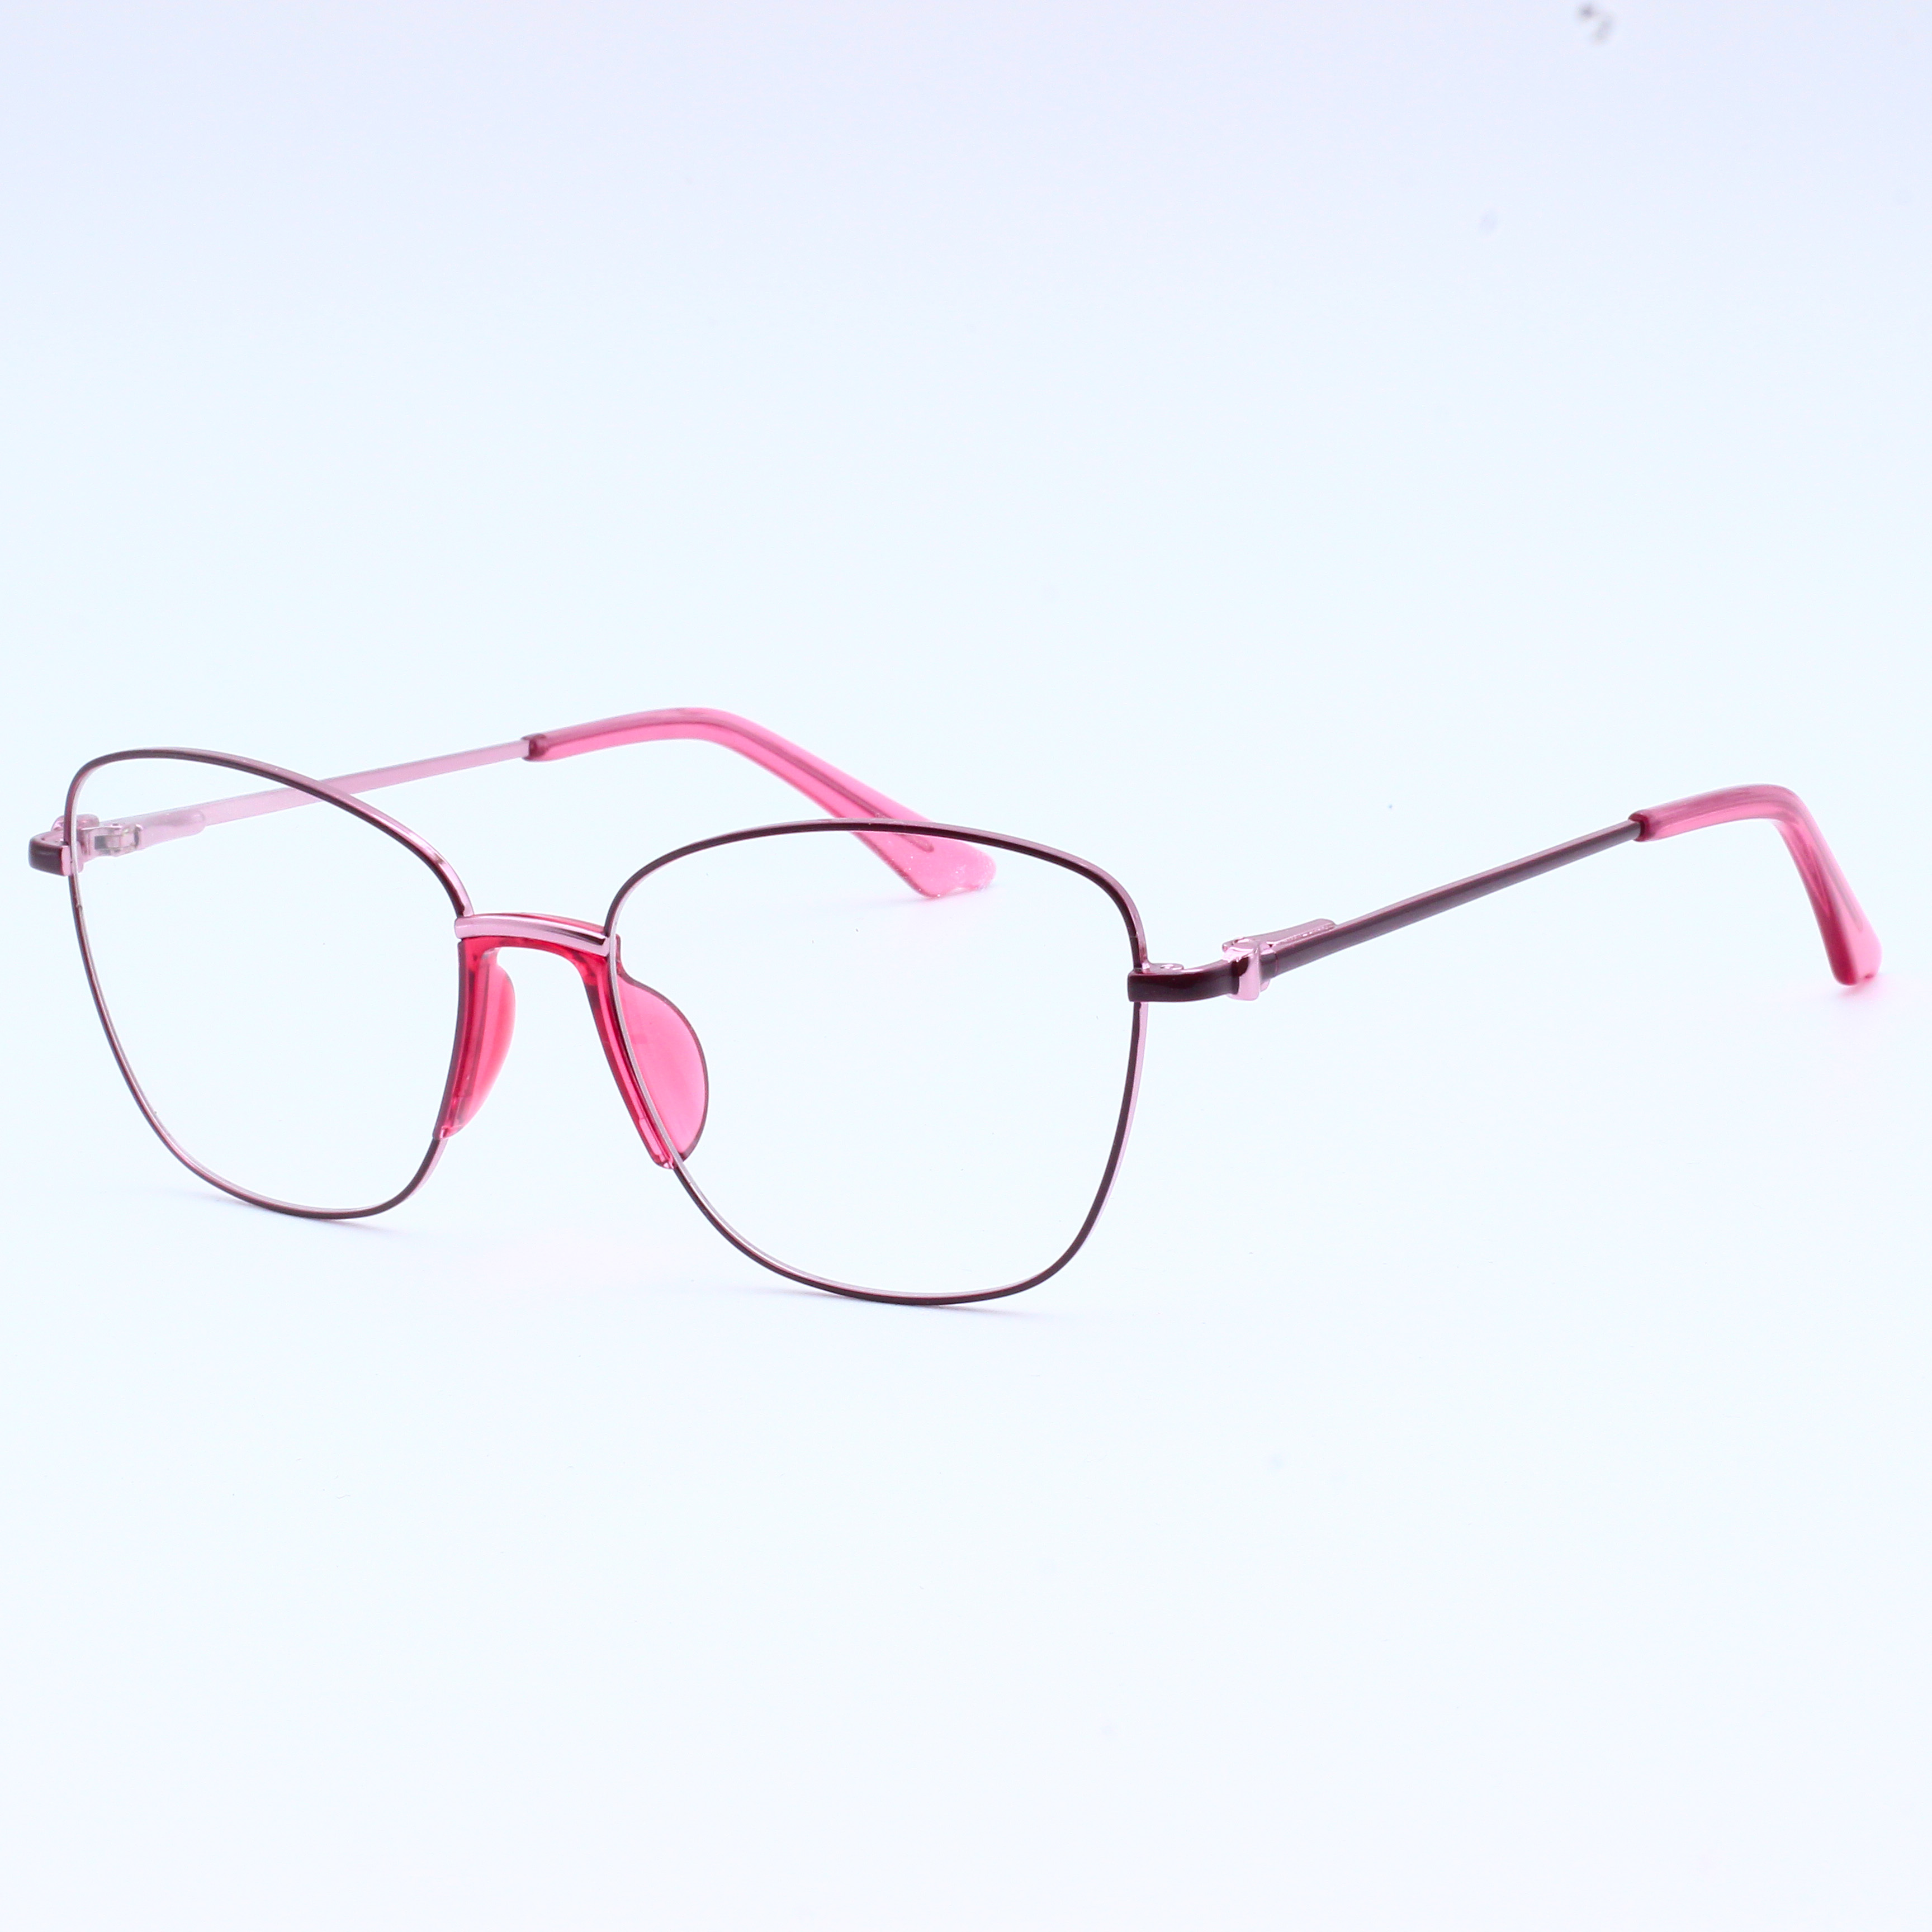 Anti Blue Rays Glasses Spring Leg Eyeglasses Optical Frames (8)